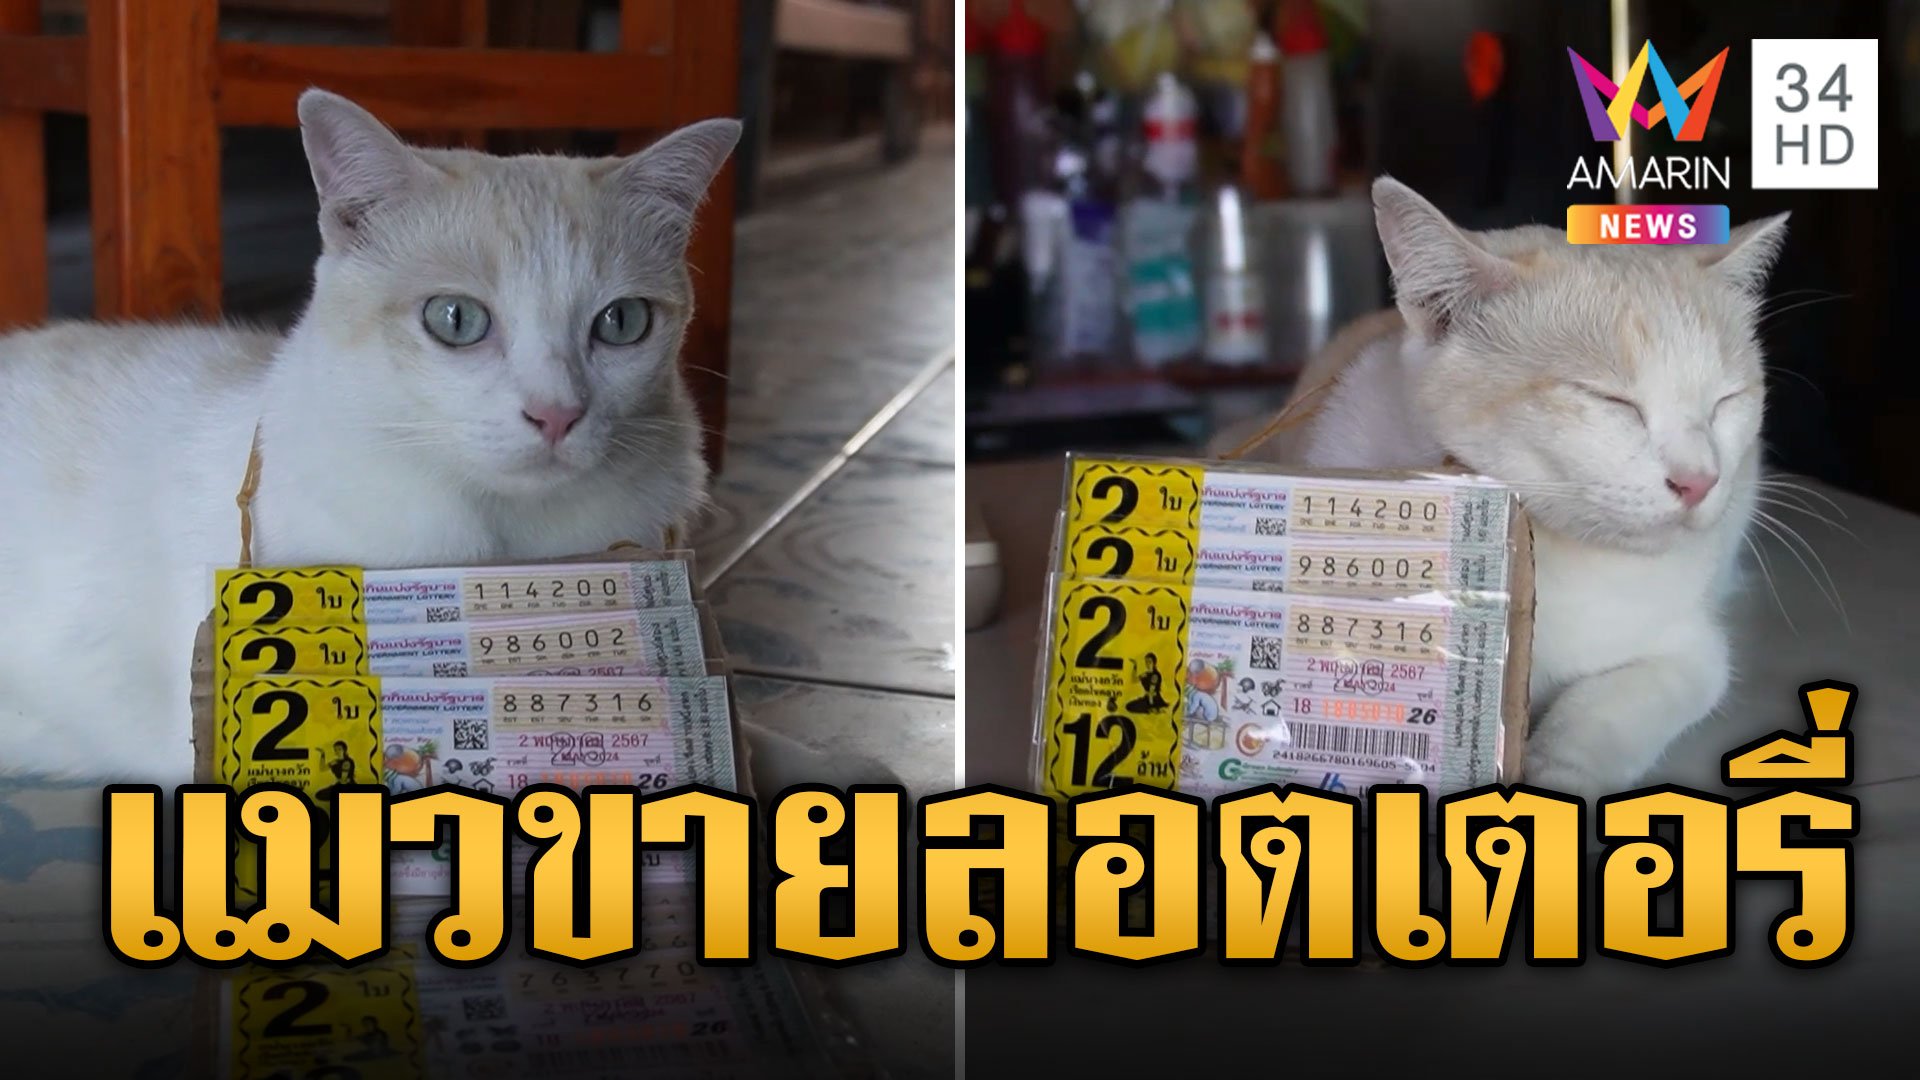 เอ็นดู! "น้องมะรุม" แมวขายลอตเตอรี่ กระพริบตาเชียร์ลูกค้าซื้อเลขเด็ด | ข่าวอรุณอมรินทร์ | 27 เม.ย. 67 | AMARIN TVHD34